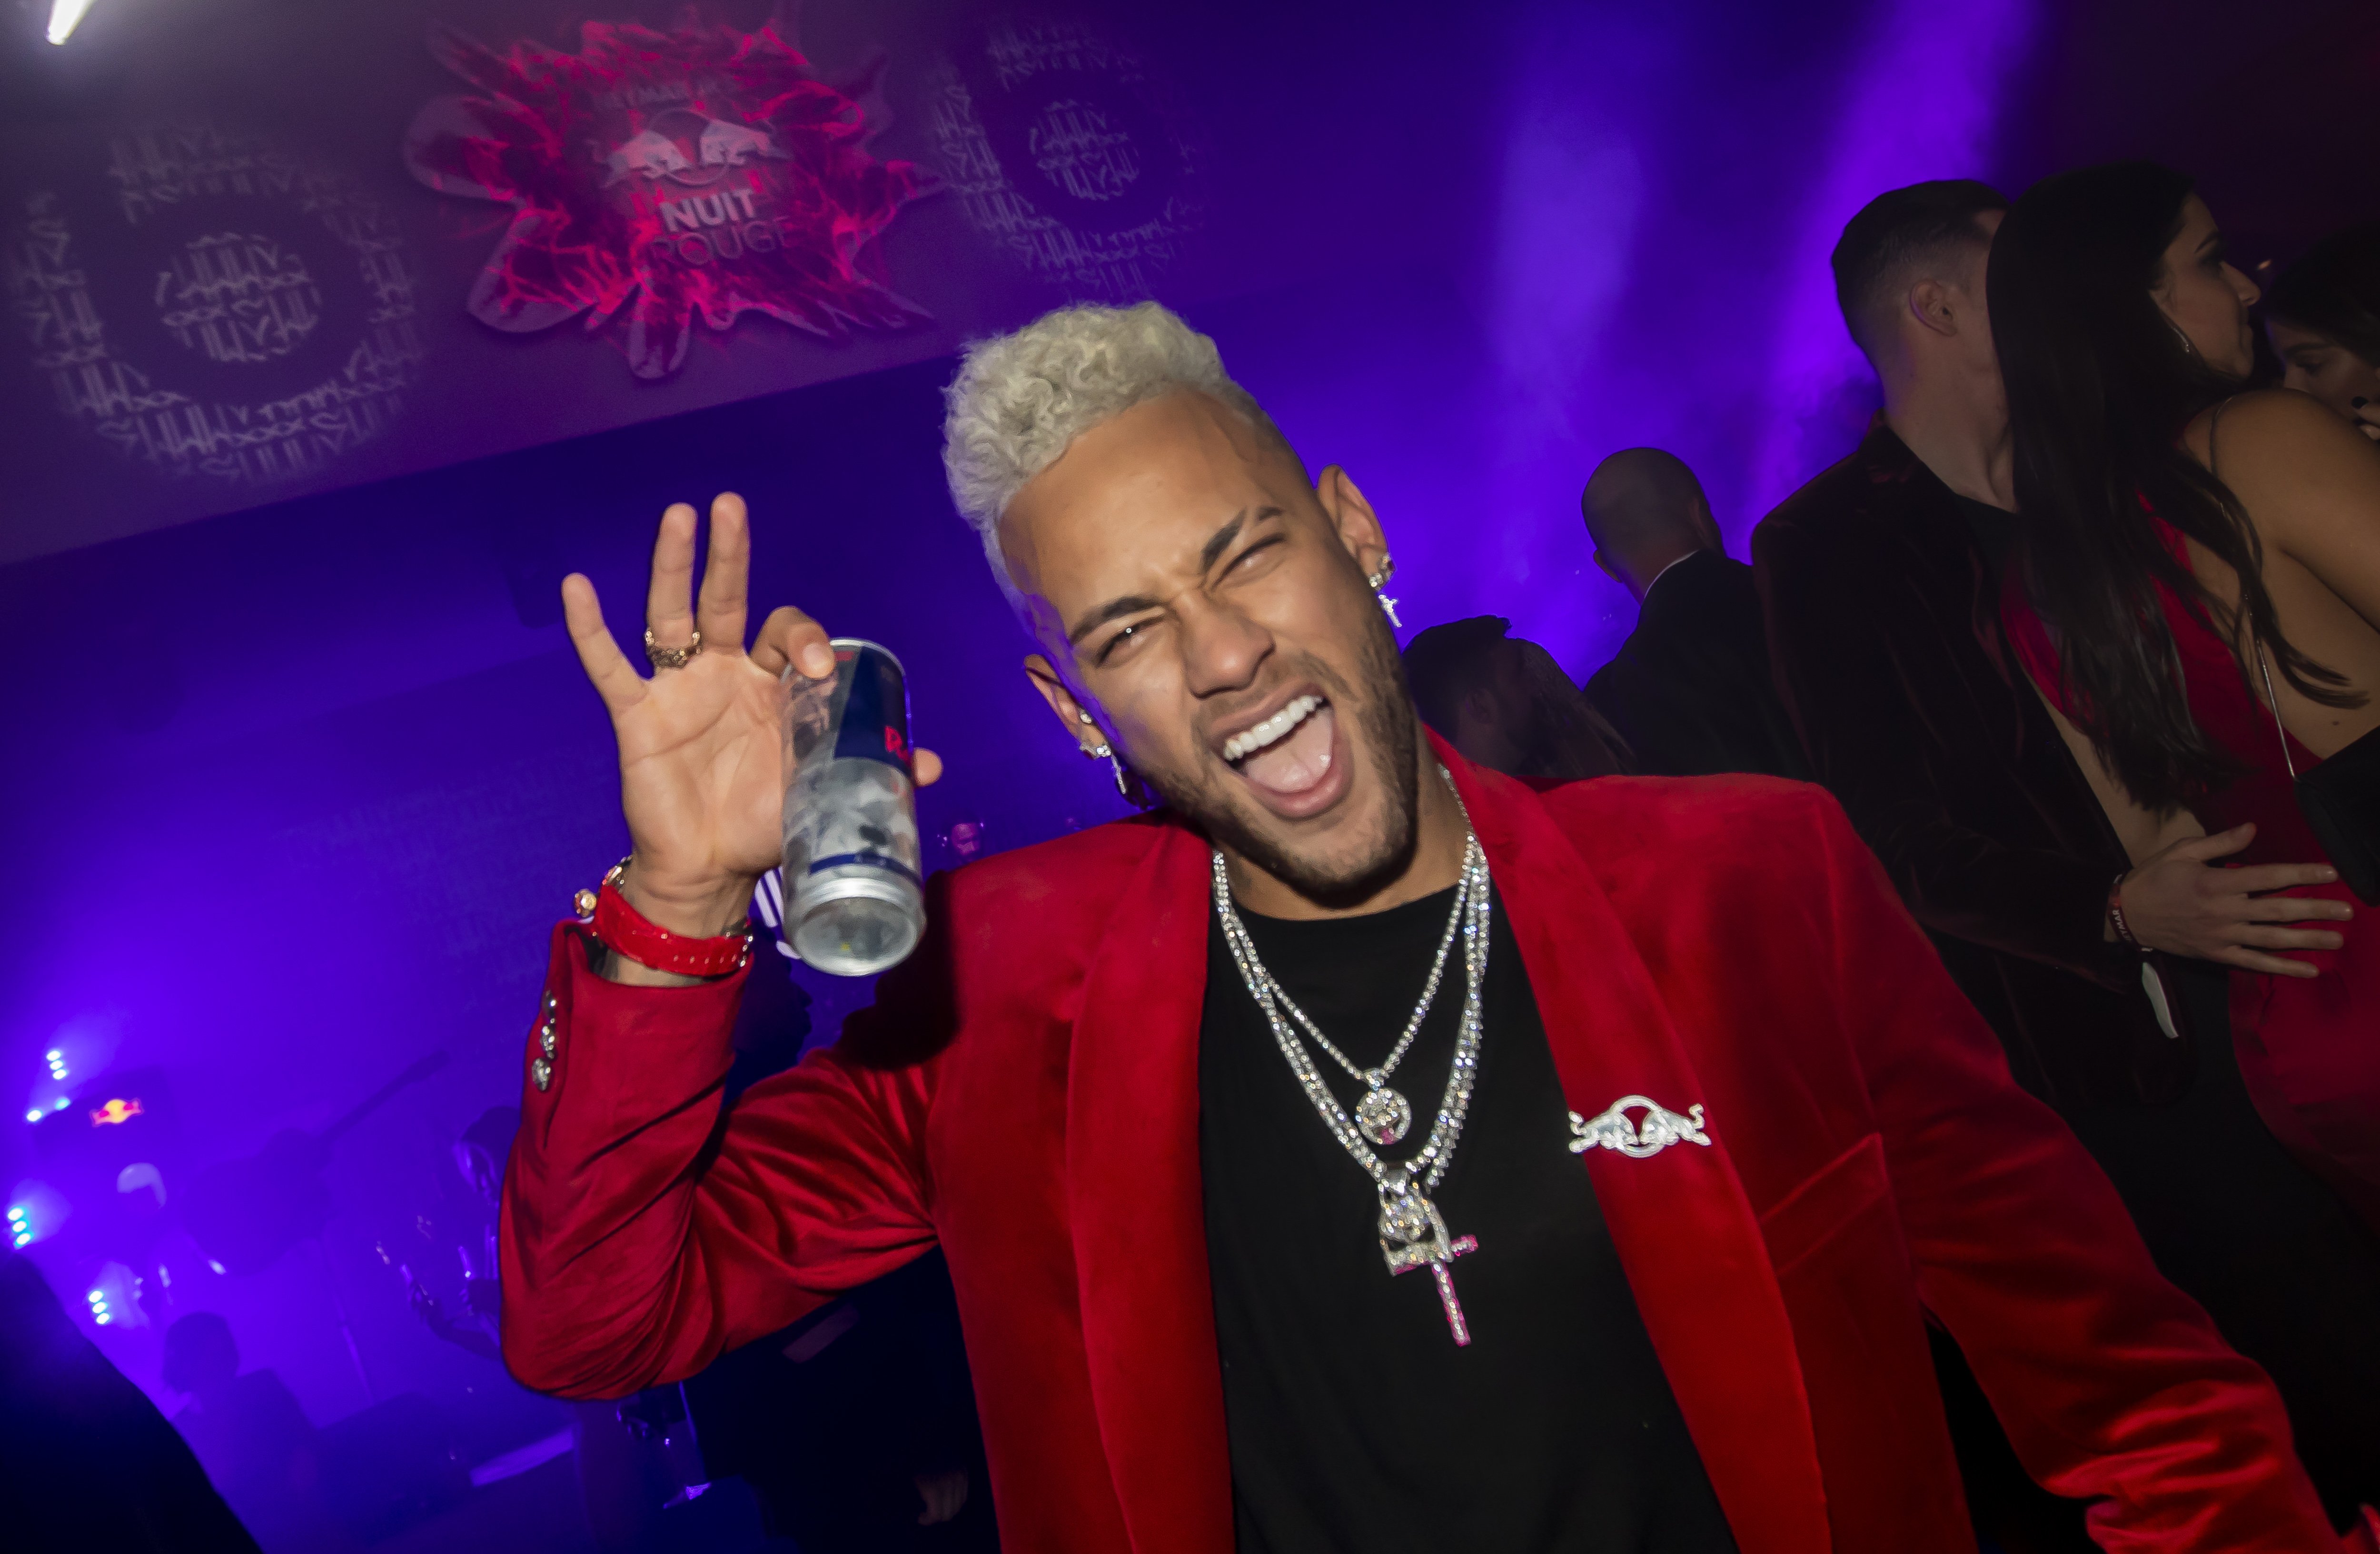 La excéntrica fiesta de cumpleaños de Neymar: famosos y glamour para sus 27 años